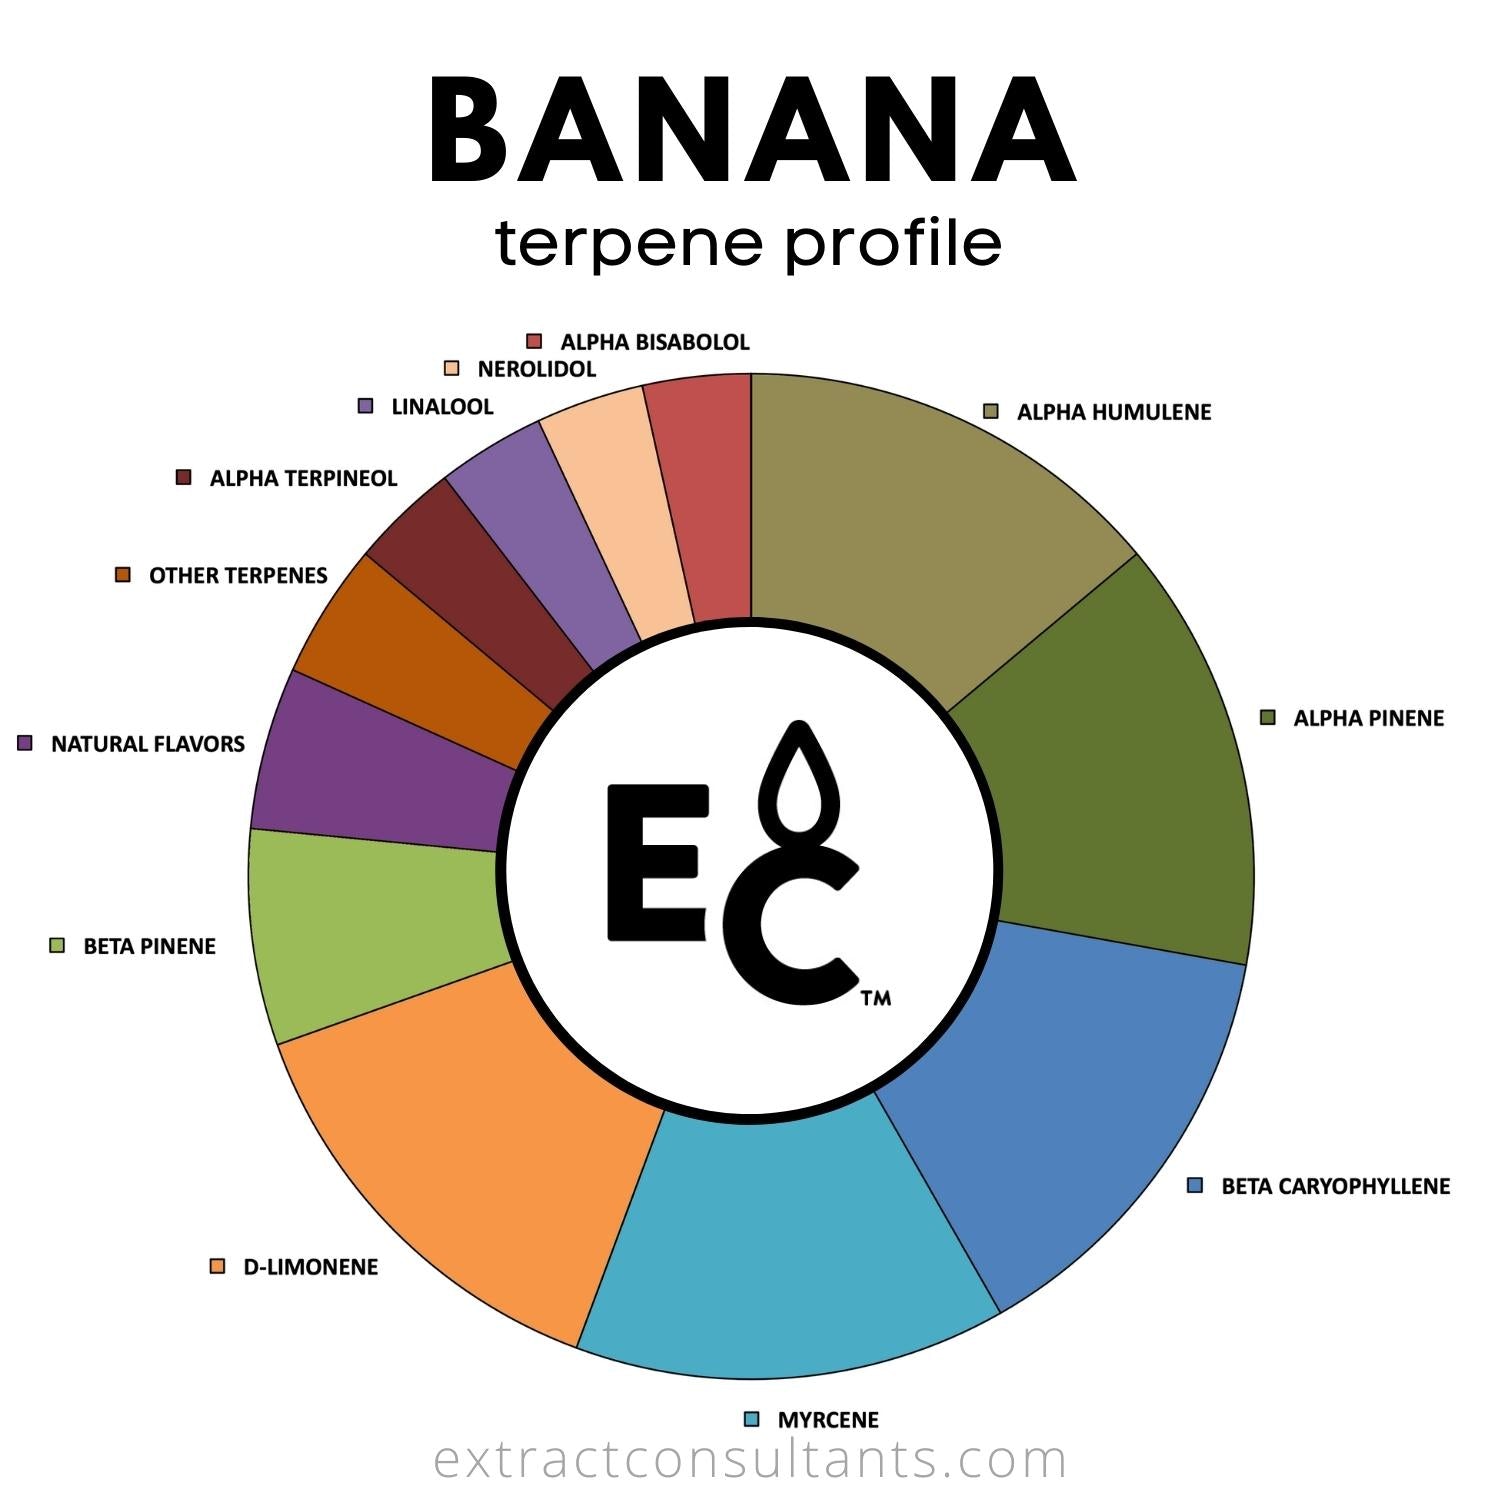 Banana terpene profile